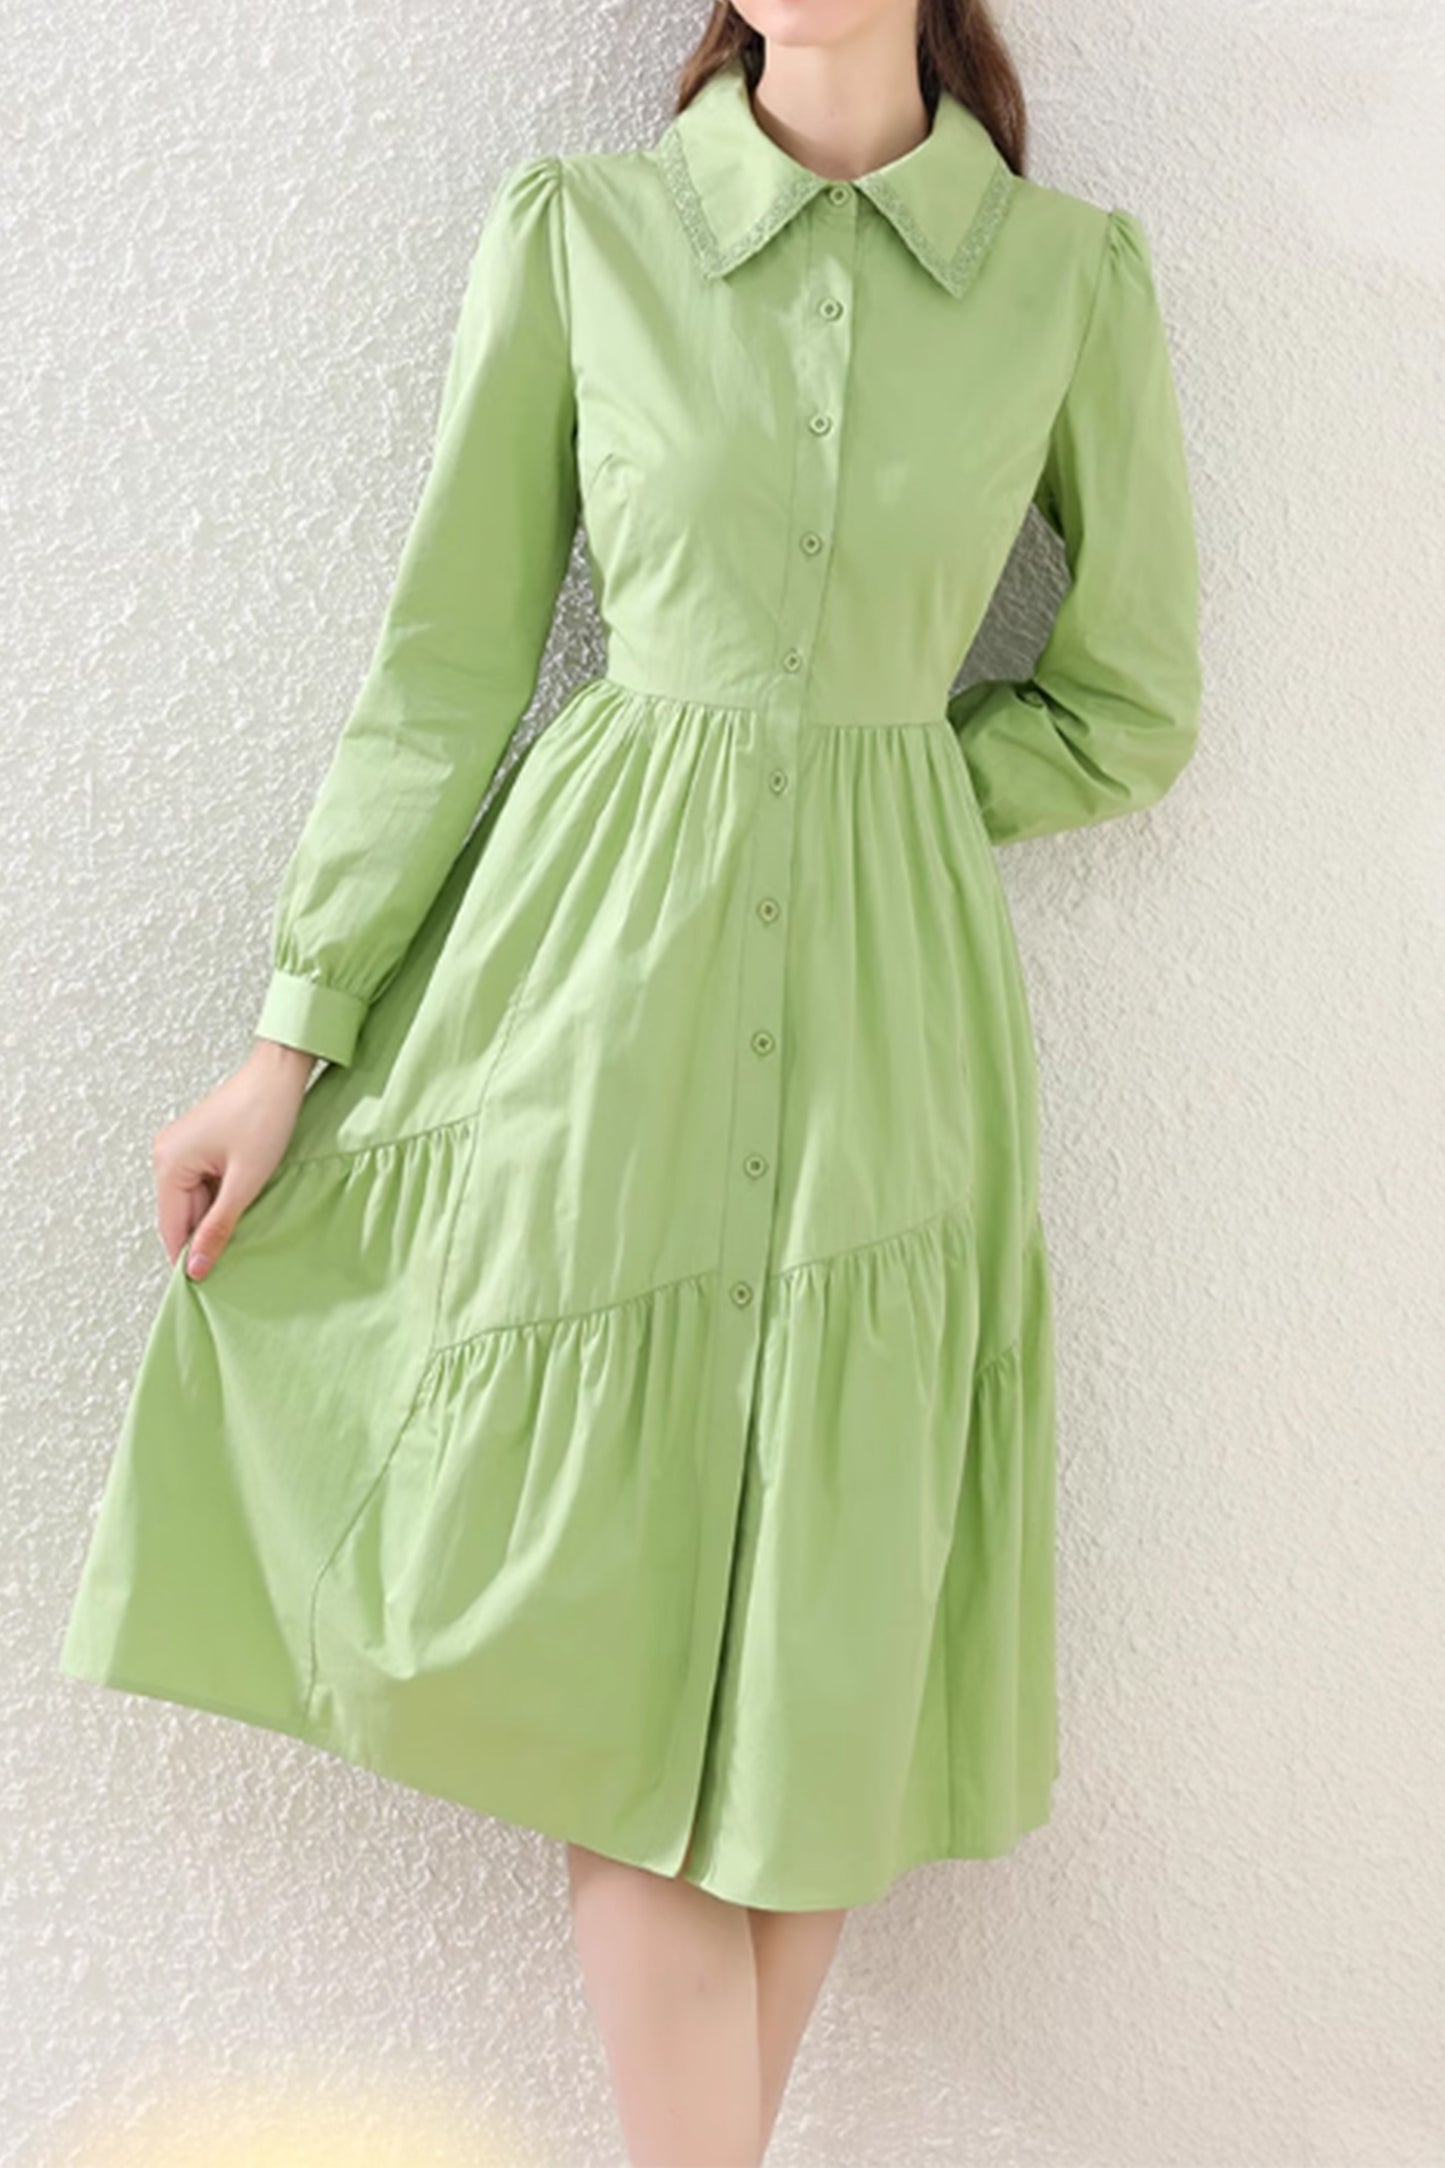 Green button up shirt dress women 4884